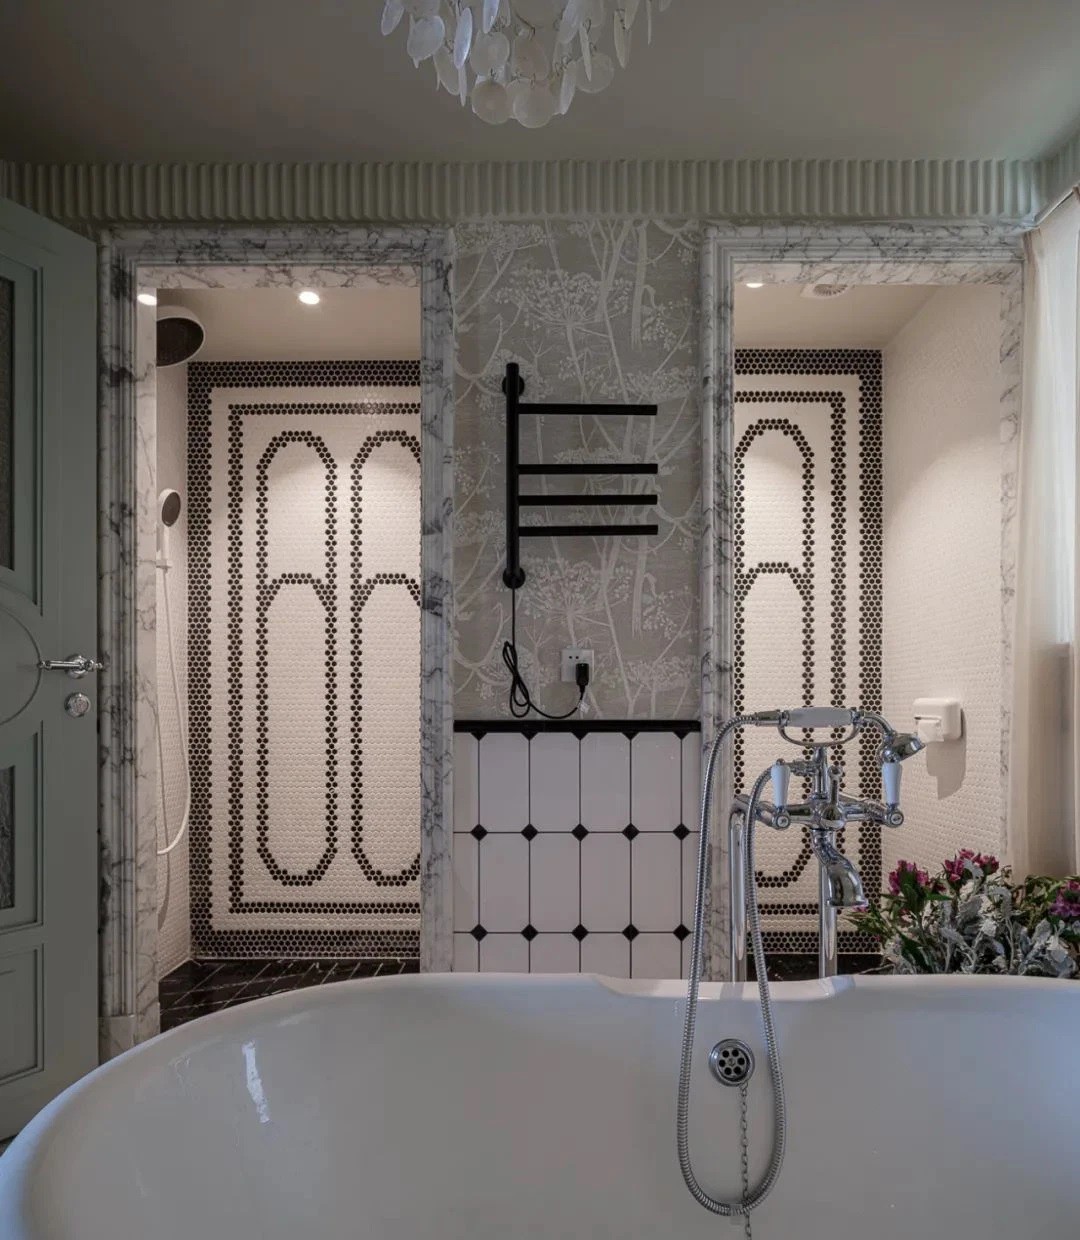 
Phòng tắm được thiết kế với cửa đôi, trong rất cân xứng và hài hòa
